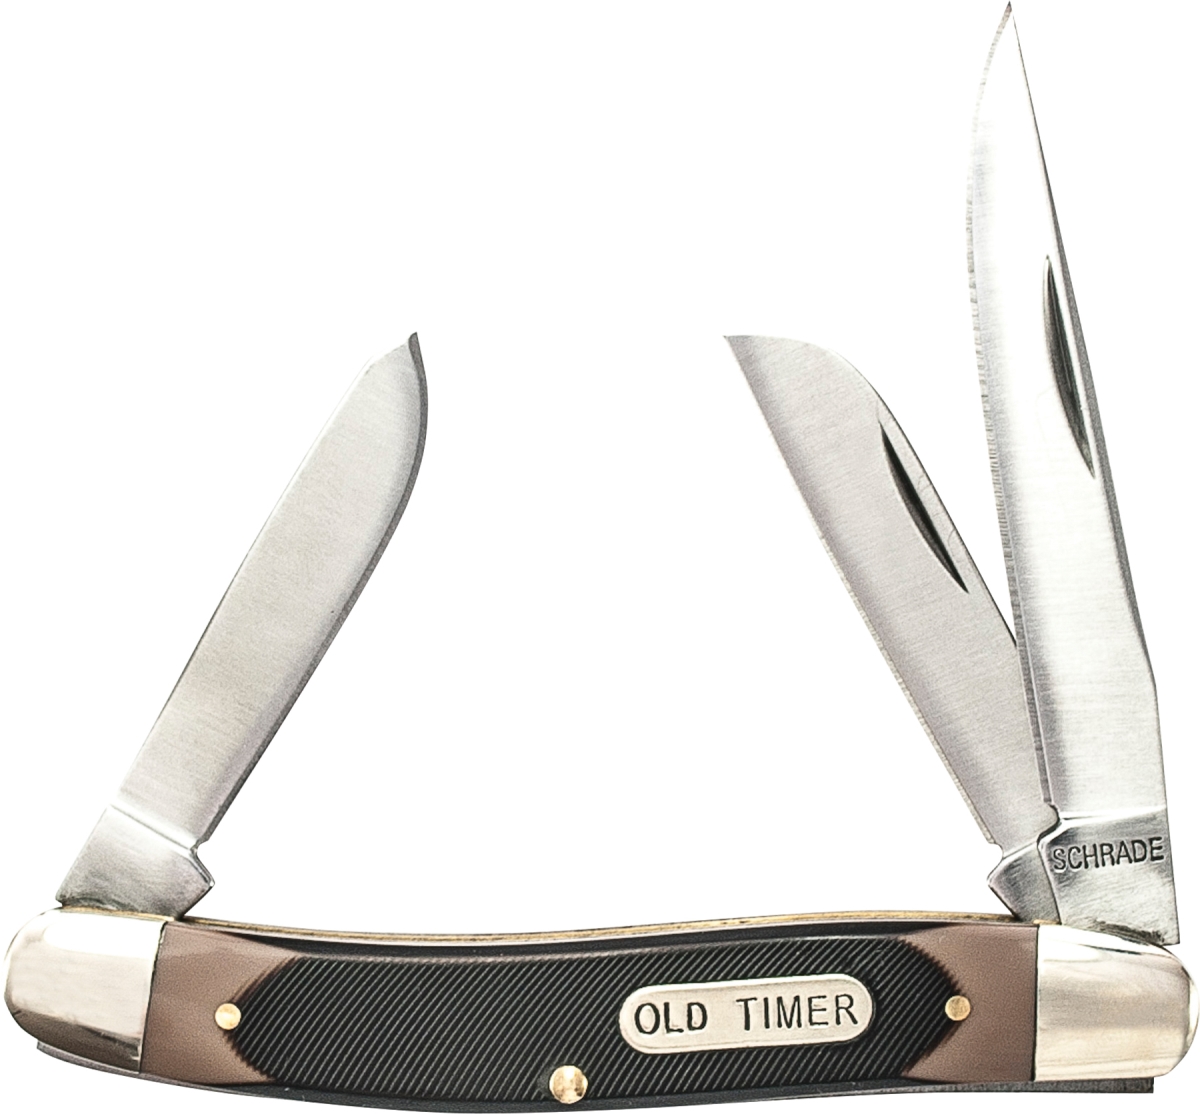 Sch-98ot 2019 Schrade Old Timer Ramrod Knife With Turkish Clip & Sheepfoot & Spey Blades